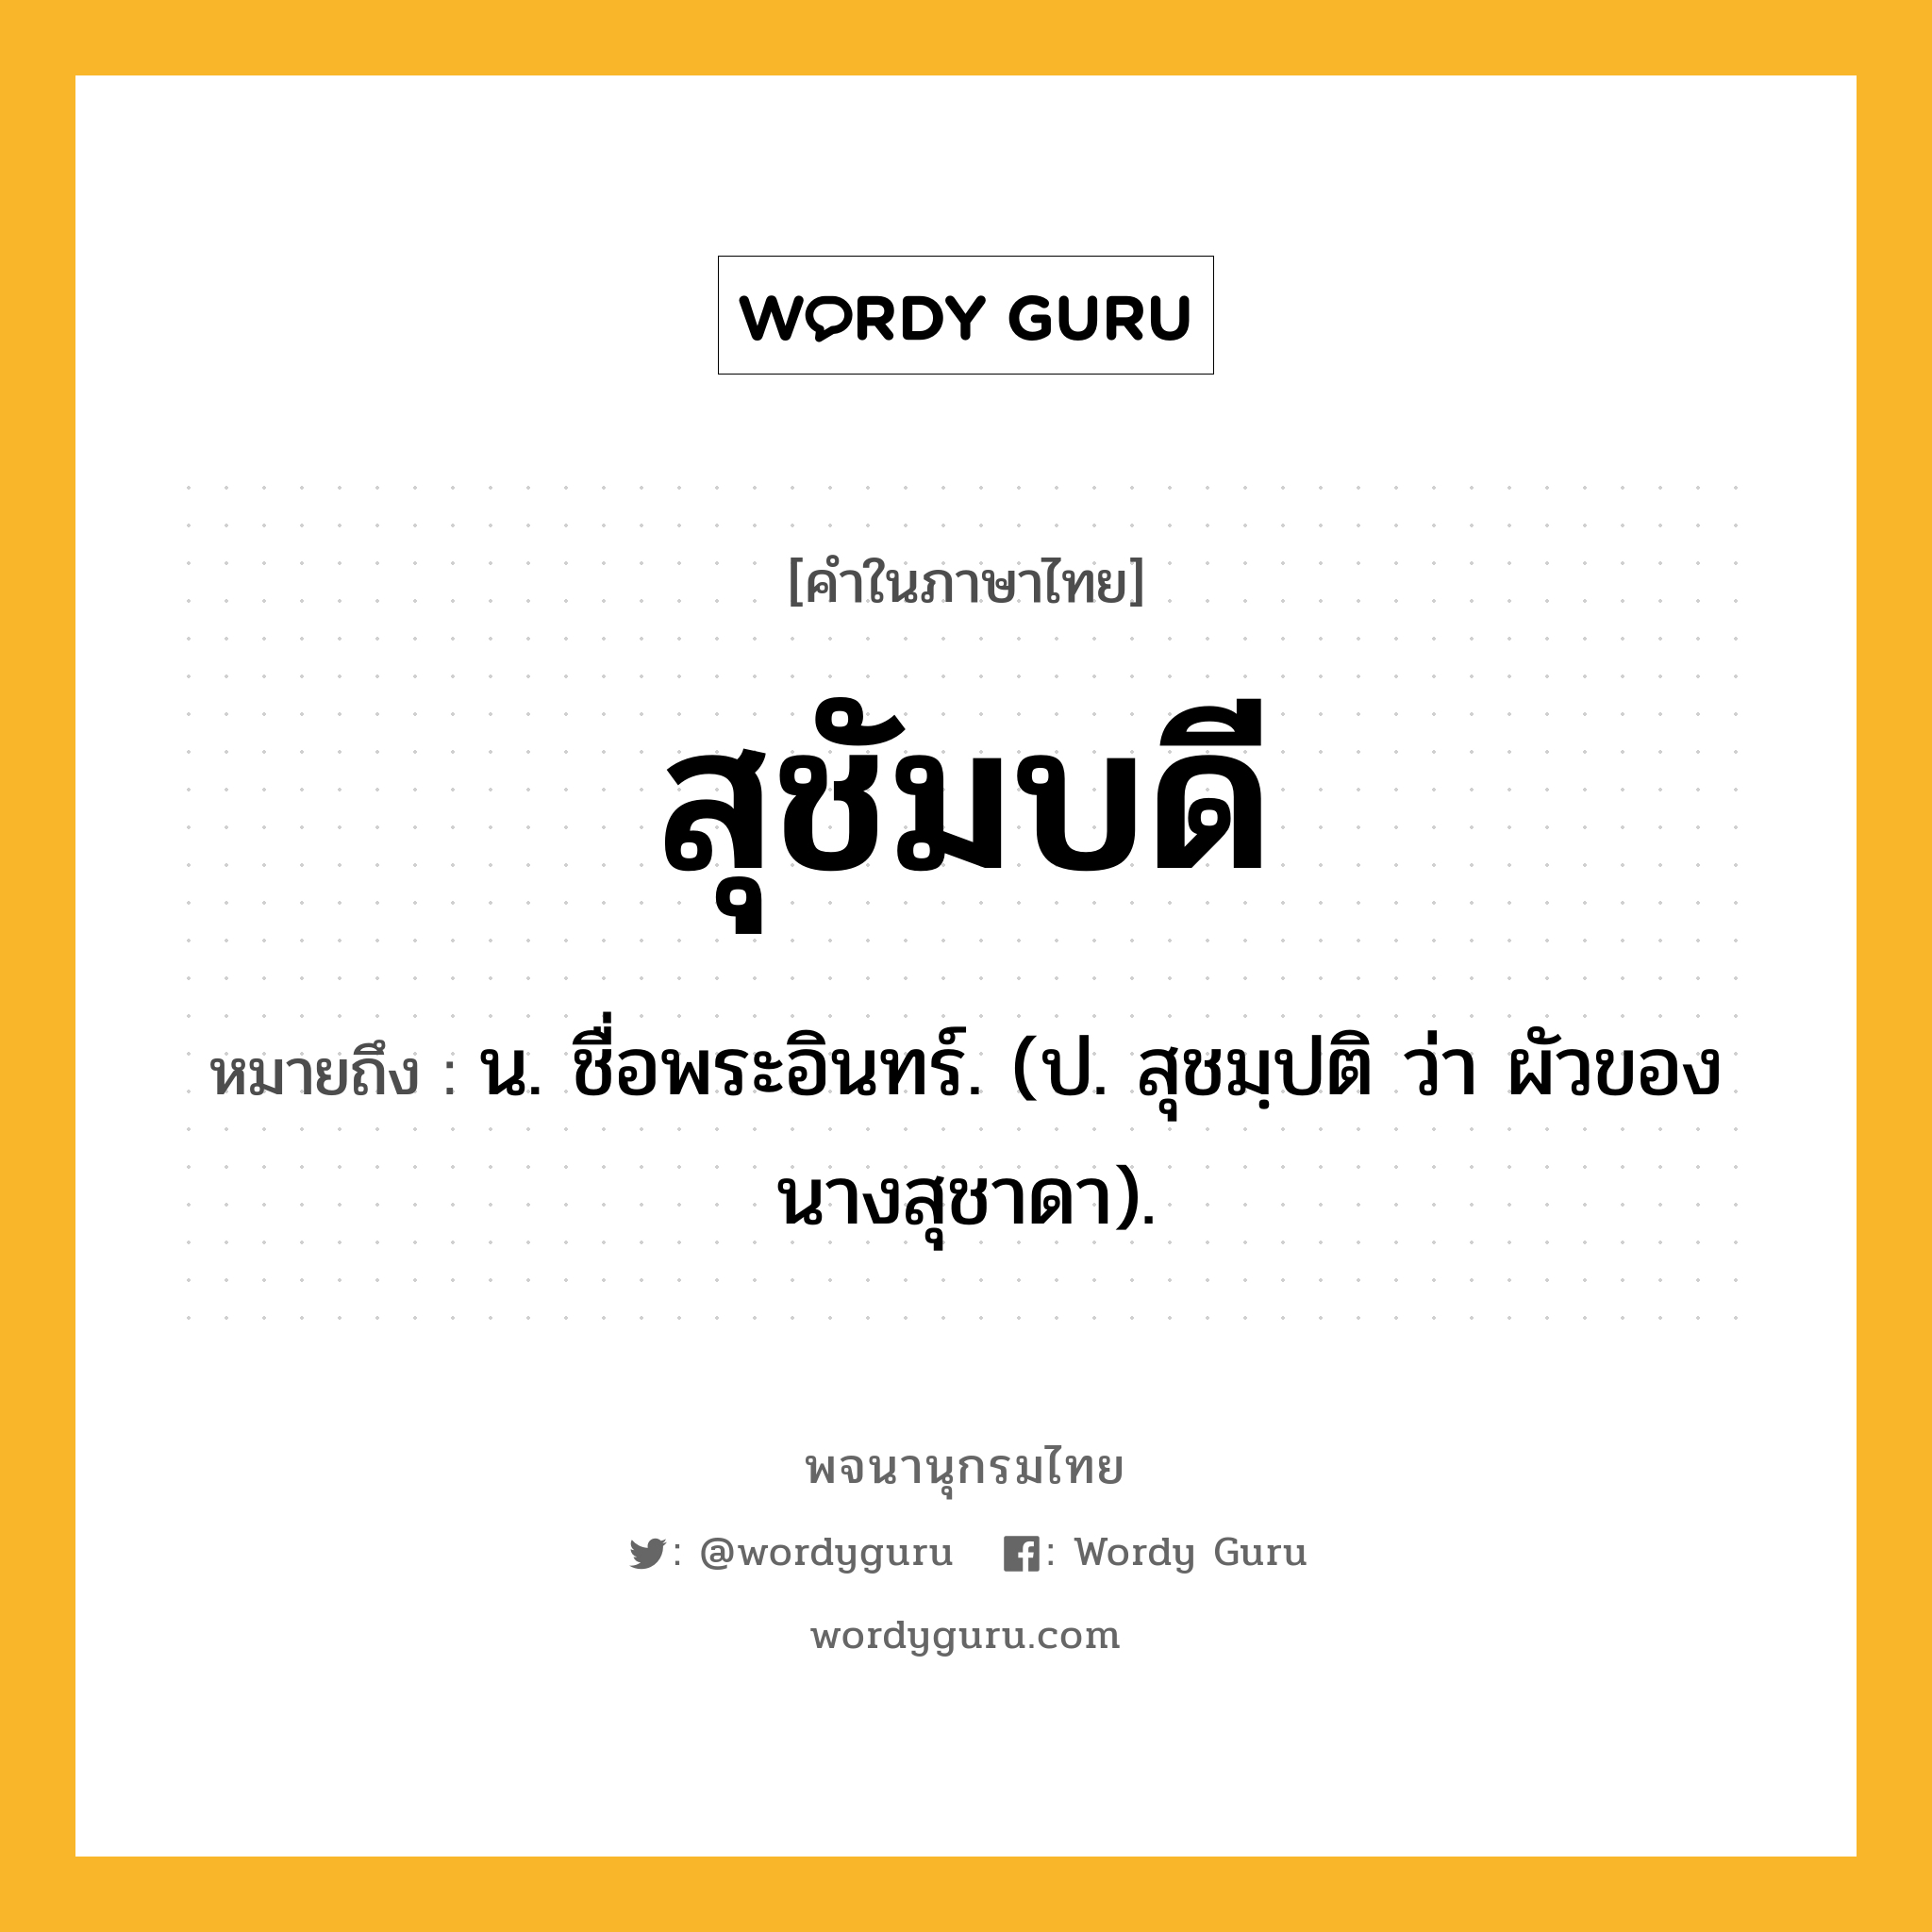 สุชัมบดี หมายถึงอะไร?, คำในภาษาไทย สุชัมบดี หมายถึง น. ชื่อพระอินทร์. (ป. สุชมฺปติ ว่า ผัวของนางสุชาดา).